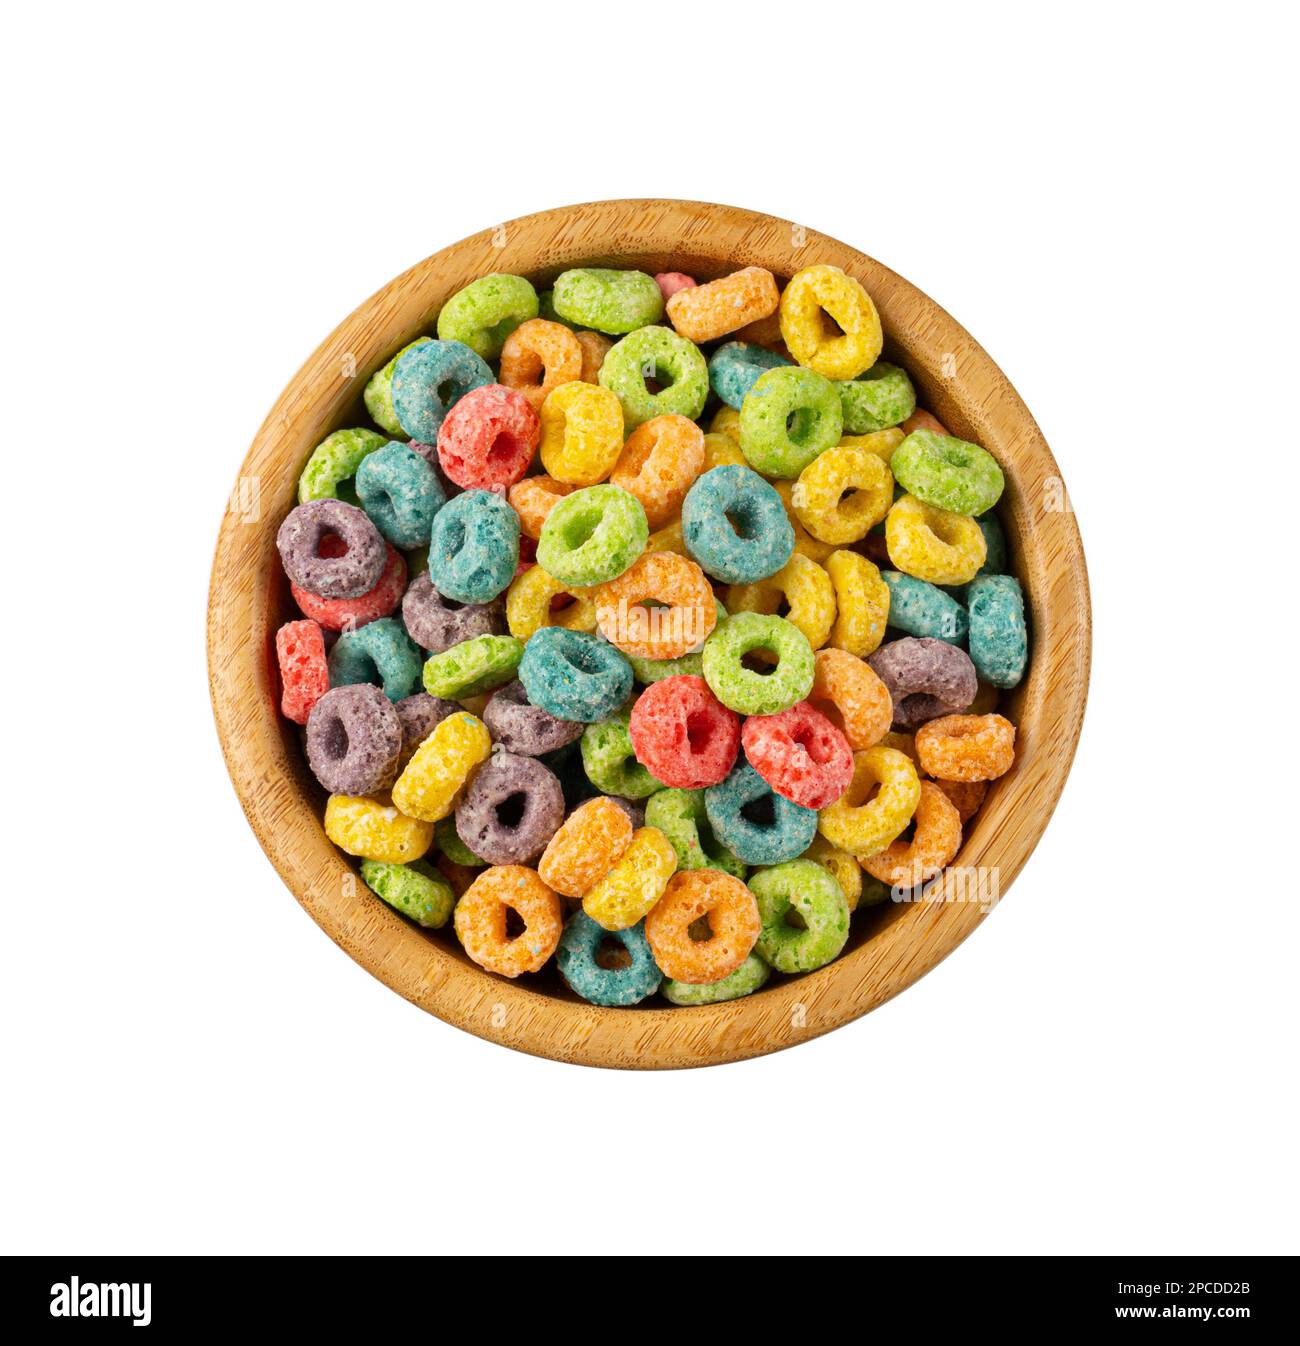 Bunte Frühstücksringe in der isolierten Schüssel. Fruit Loops, fruchtige Cerealien-Ringe, farbenfrohe Corn Cerealien auf weißem Hintergrund, Draufsicht Stockfoto